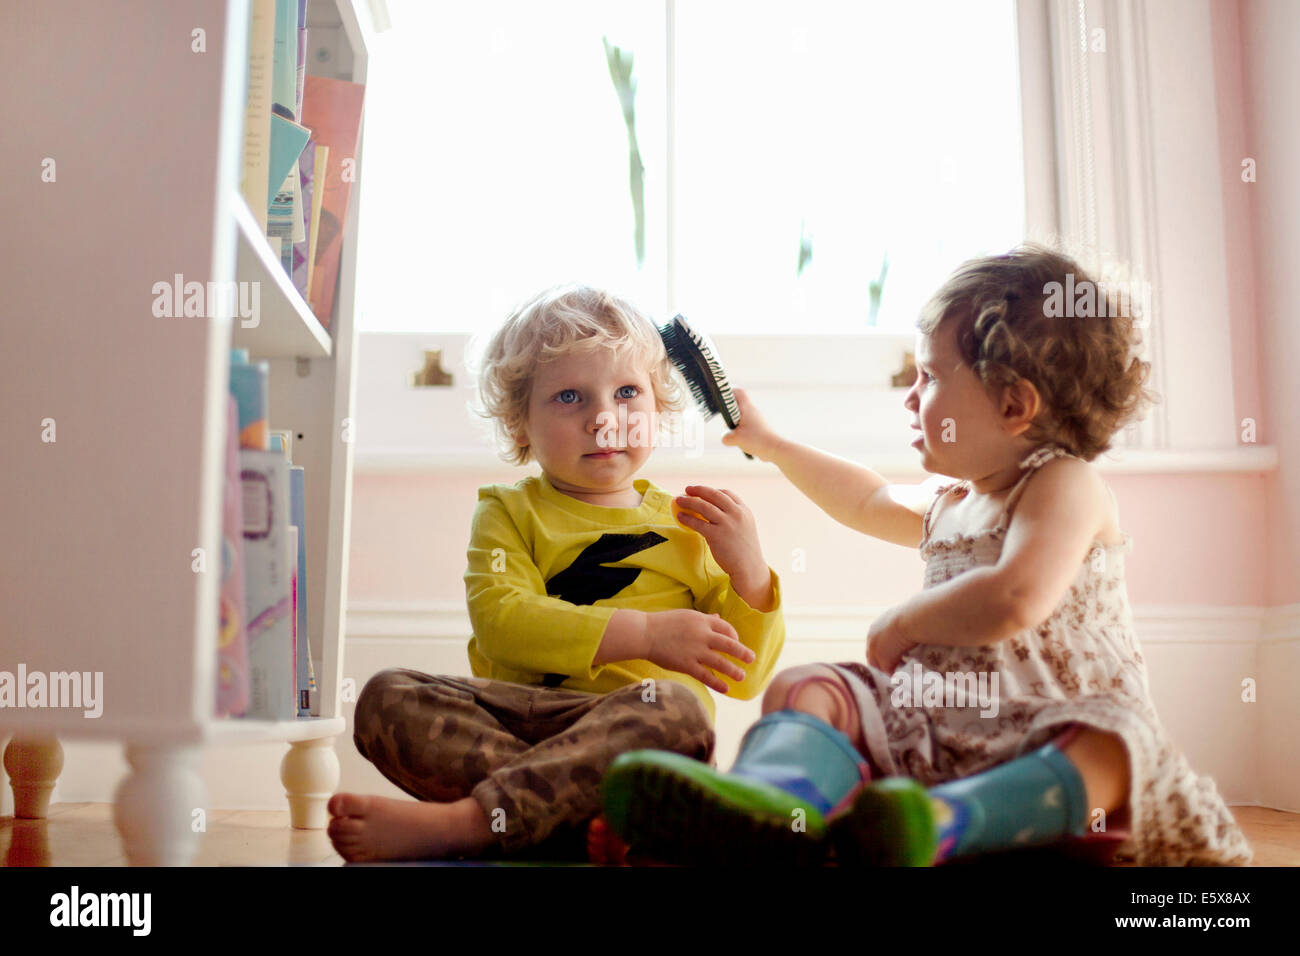 Weiblichen Kleinkind Bürsten männlichen Kleinkindern Haare im Spielzimmer Stockfoto